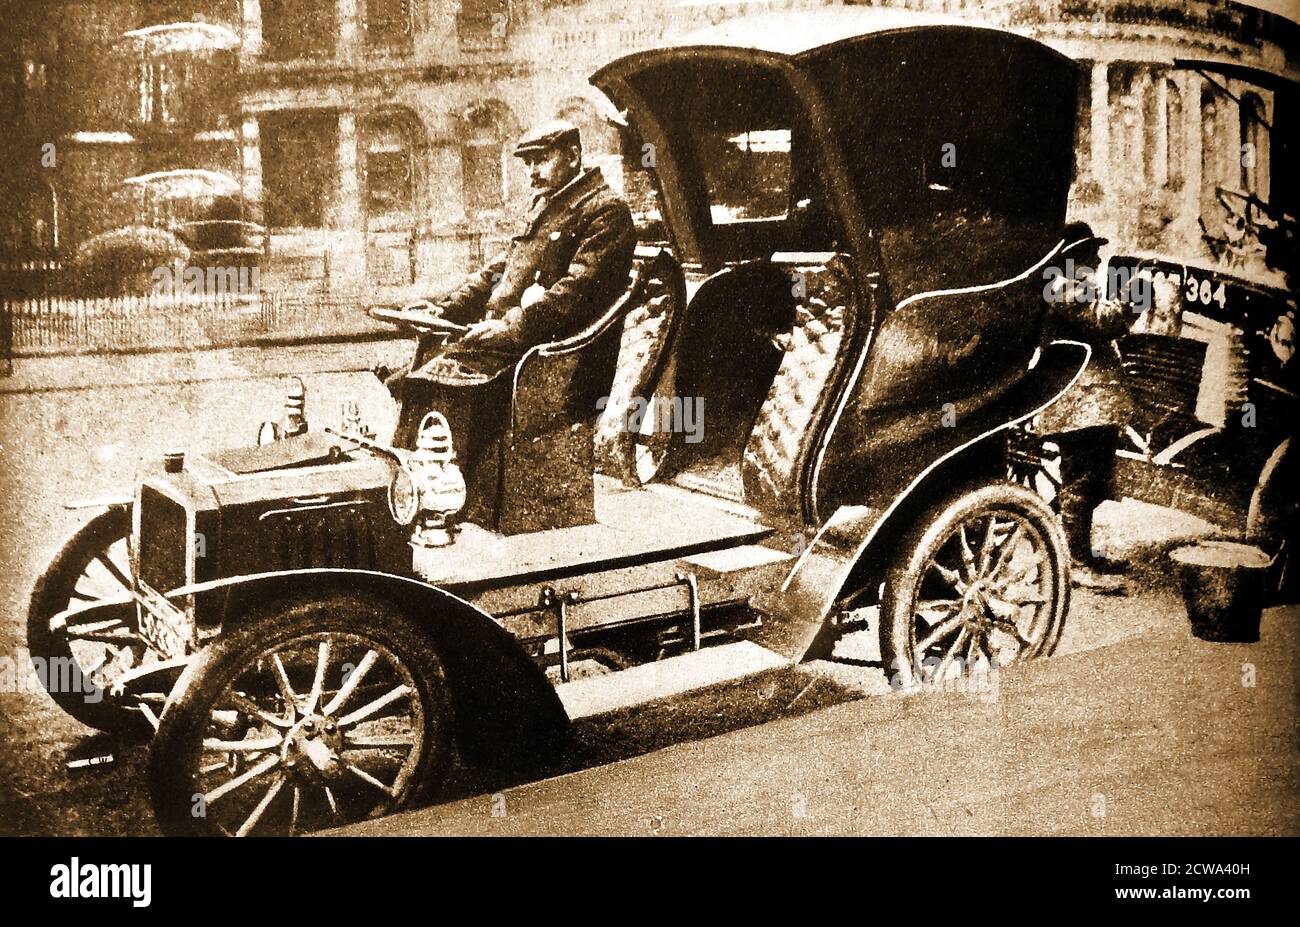 1904 Fotografia del primo taxi motorizzato di Londra che utilizza un corpo Hansom Cab su ruote, di proprietà della City & Suburban Cab Co. La prima cabina a benzina a Londra (nel 1903) è stata una Prunel costruita in Francia. I marchi britannici includevano alcuni veicoli razionali, Simplex e Herald. In precedenza, i ‘Hummingbirds’ (veicoli elettrici) soprannominati dal suono che hanno prodotto sono stati introdotti nel 1897 Foto Stock